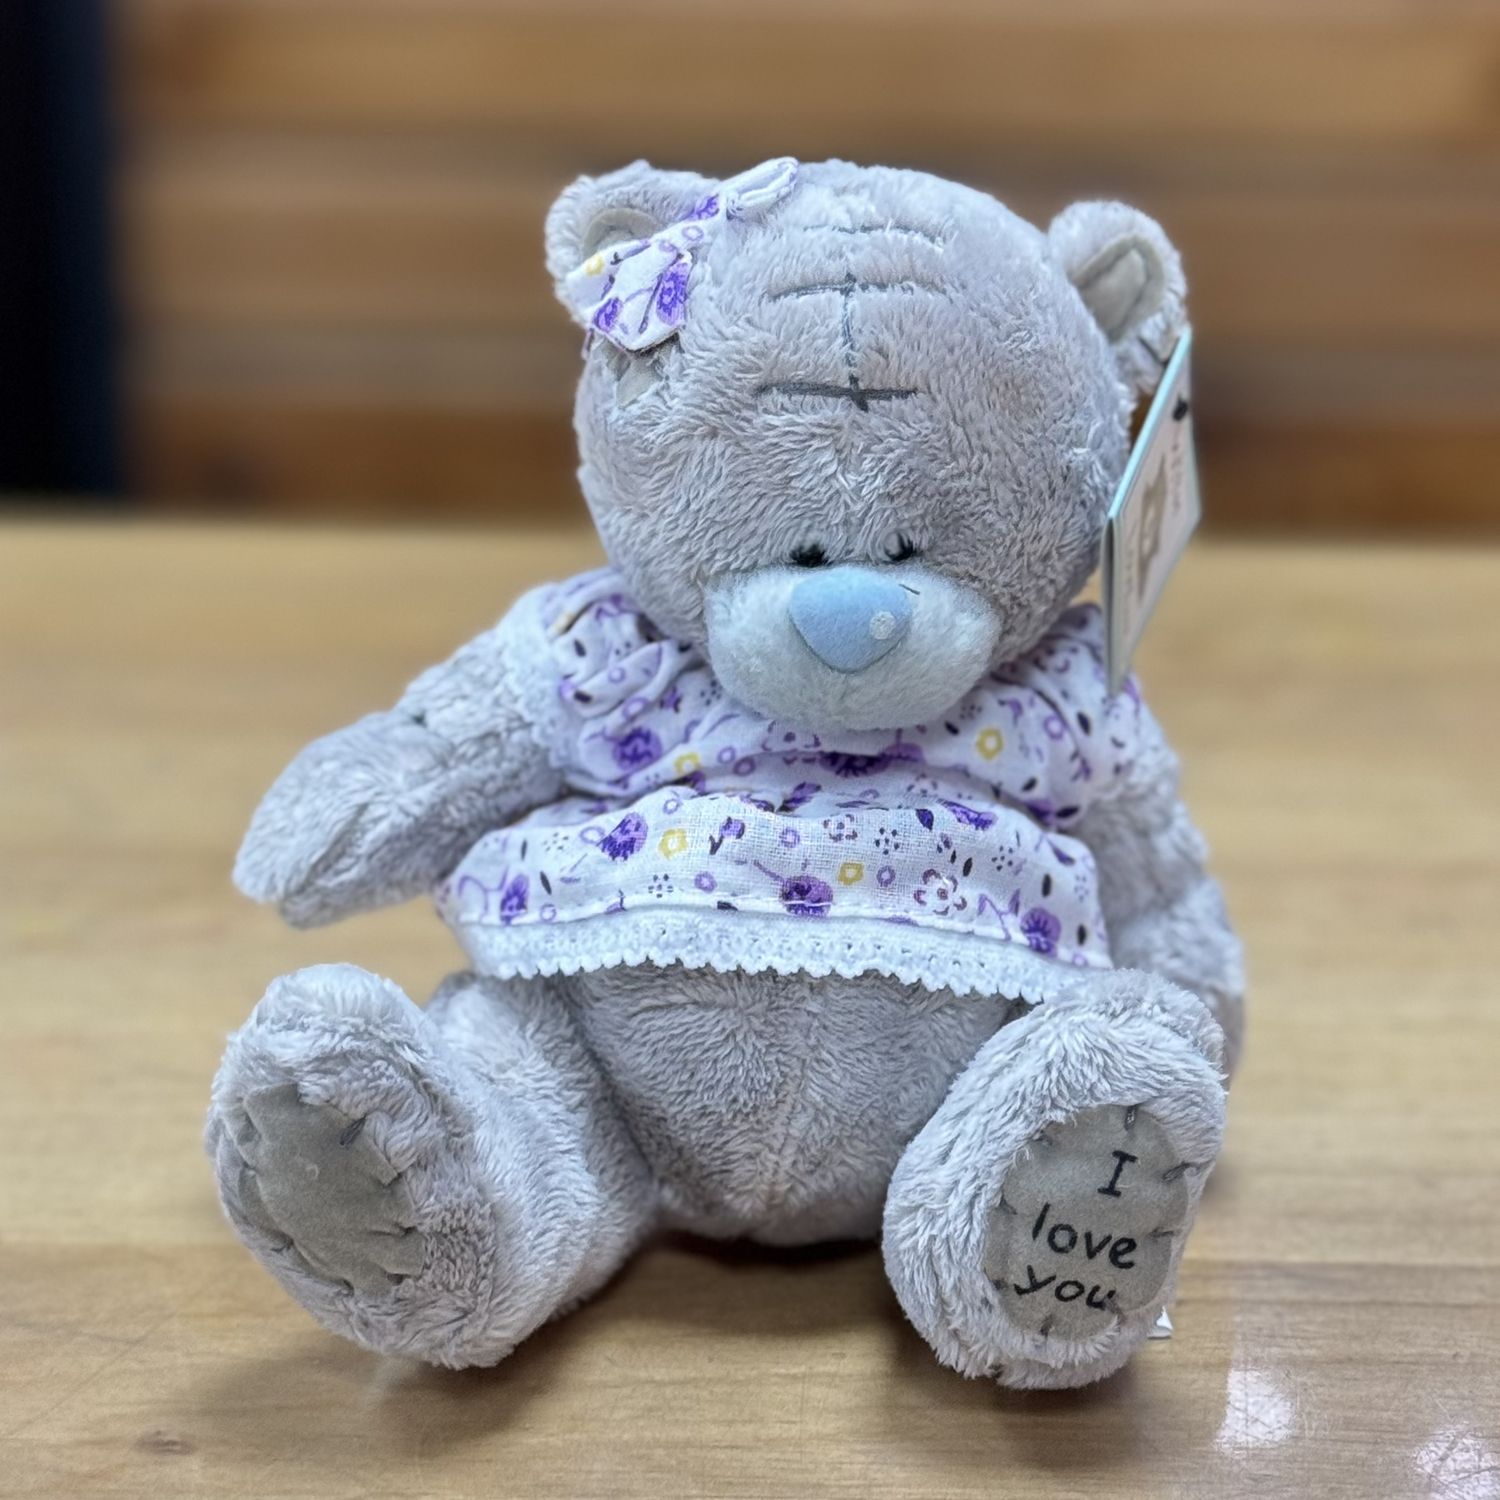 Grey teddy in a dress Villars-sur-Glane